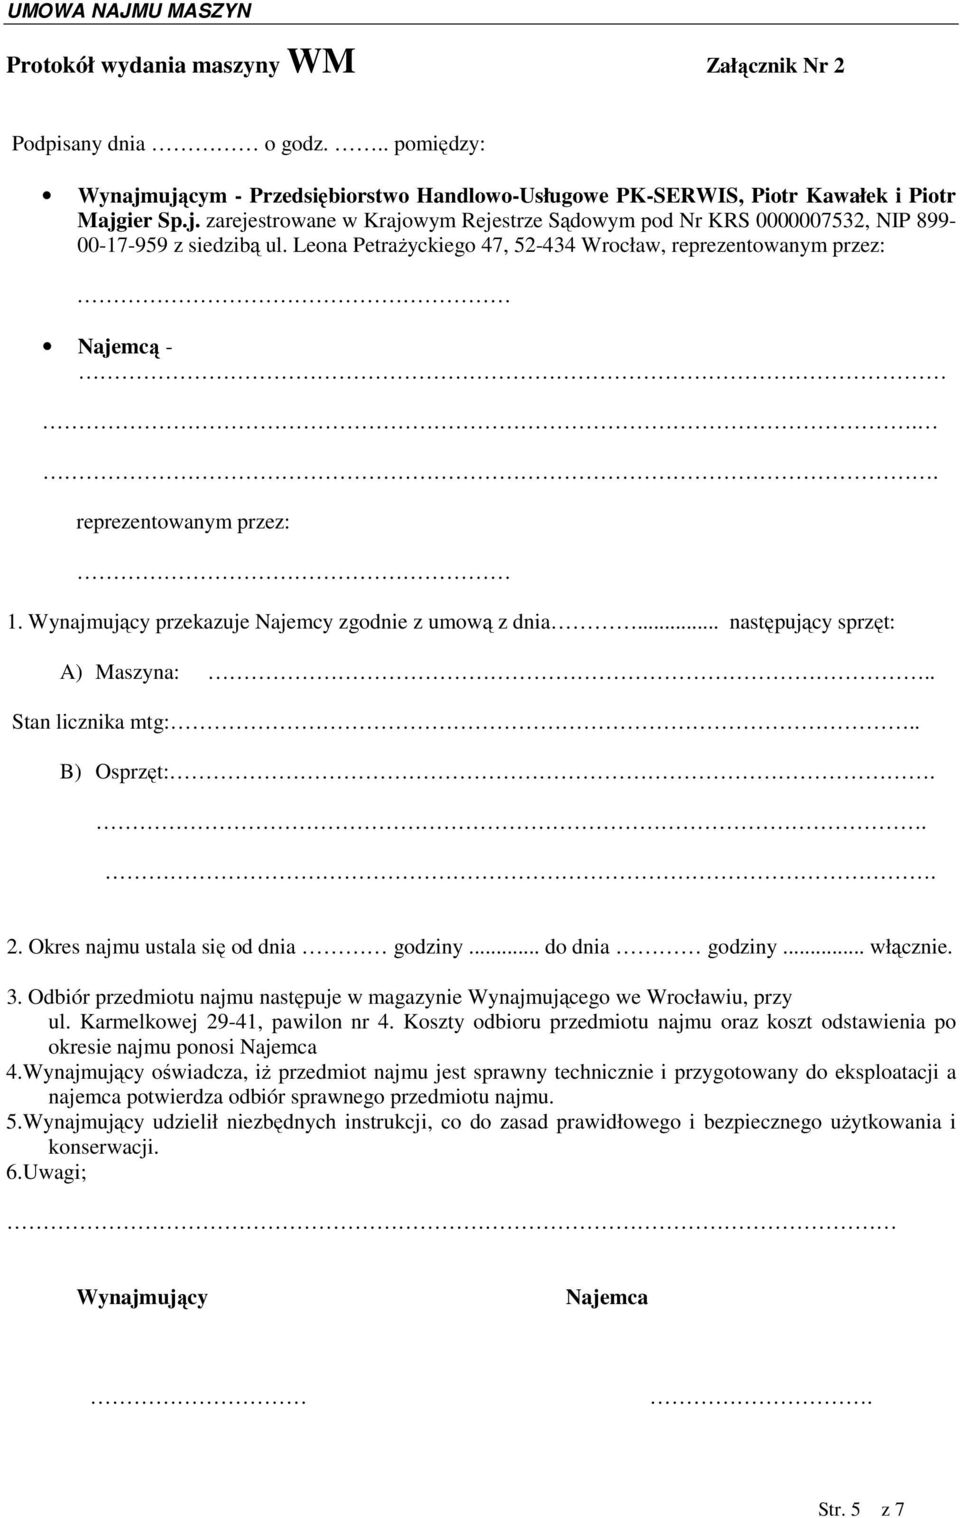 UMOWA NAJMU MASZYN WYPOŻYCZANYCH PRZEZ FIRMĘ PHU PK SERWIS P. Kawałek i P.  Magier Sp. j. - PDF Free Download